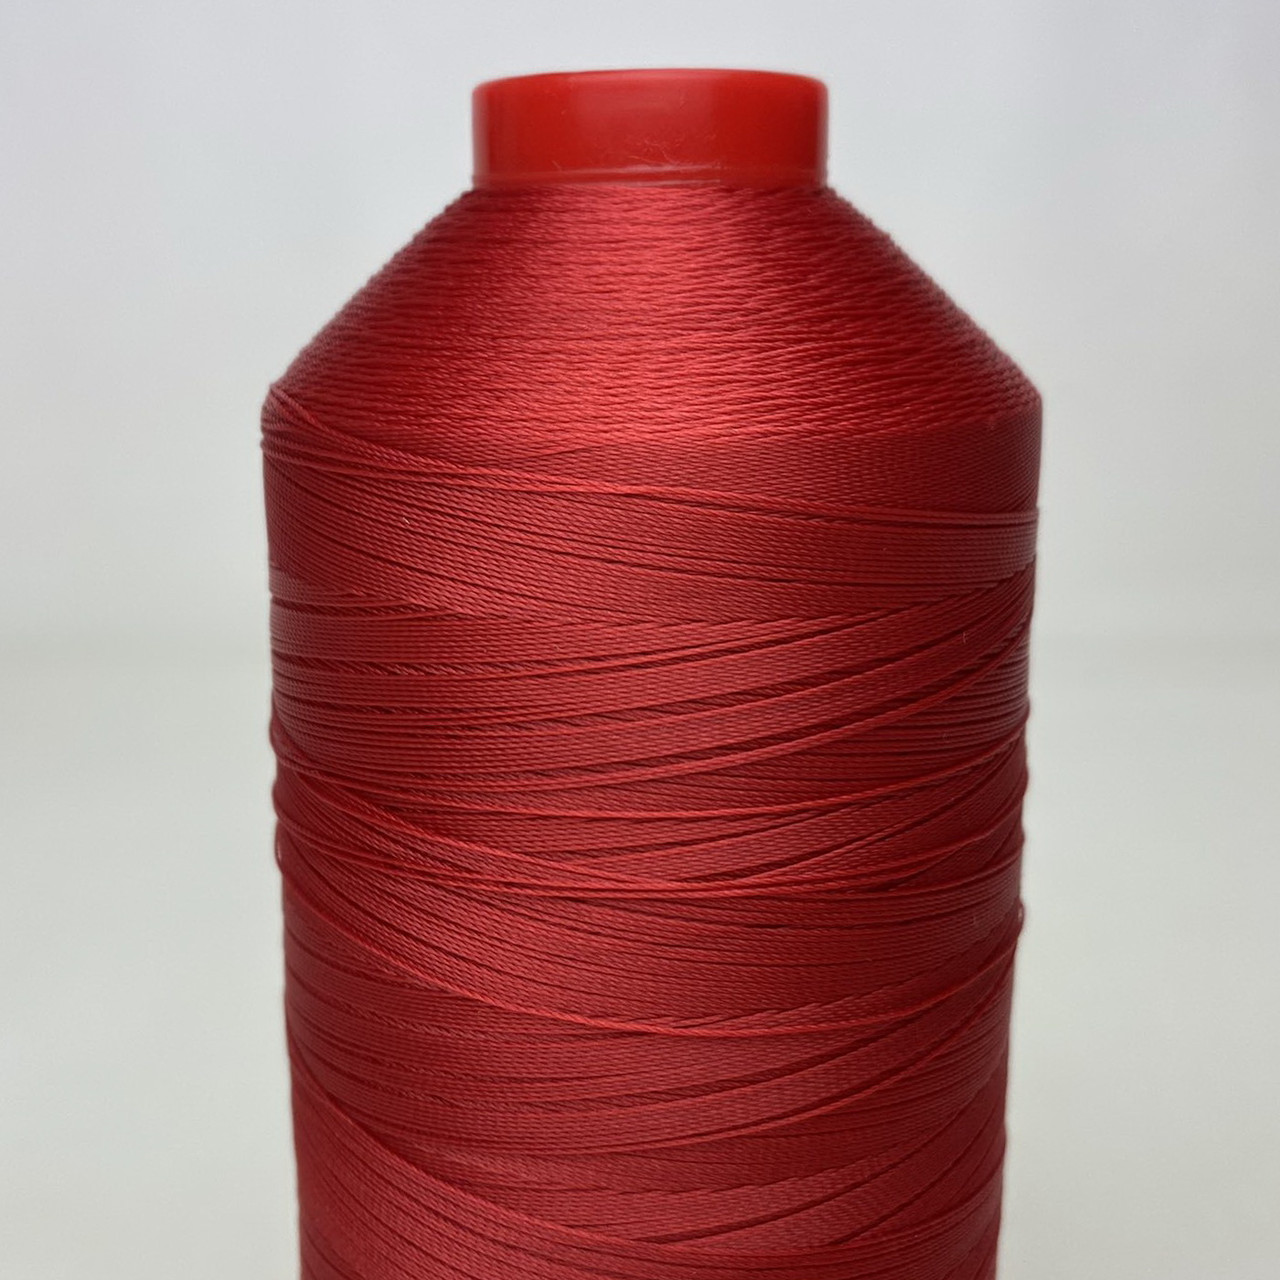 Нить POLYART(ПОЛИАРТ) N30 цвет 1644 красный, для пошив чехлов на автомобильные сидения и руль, 2500м детальная фотка